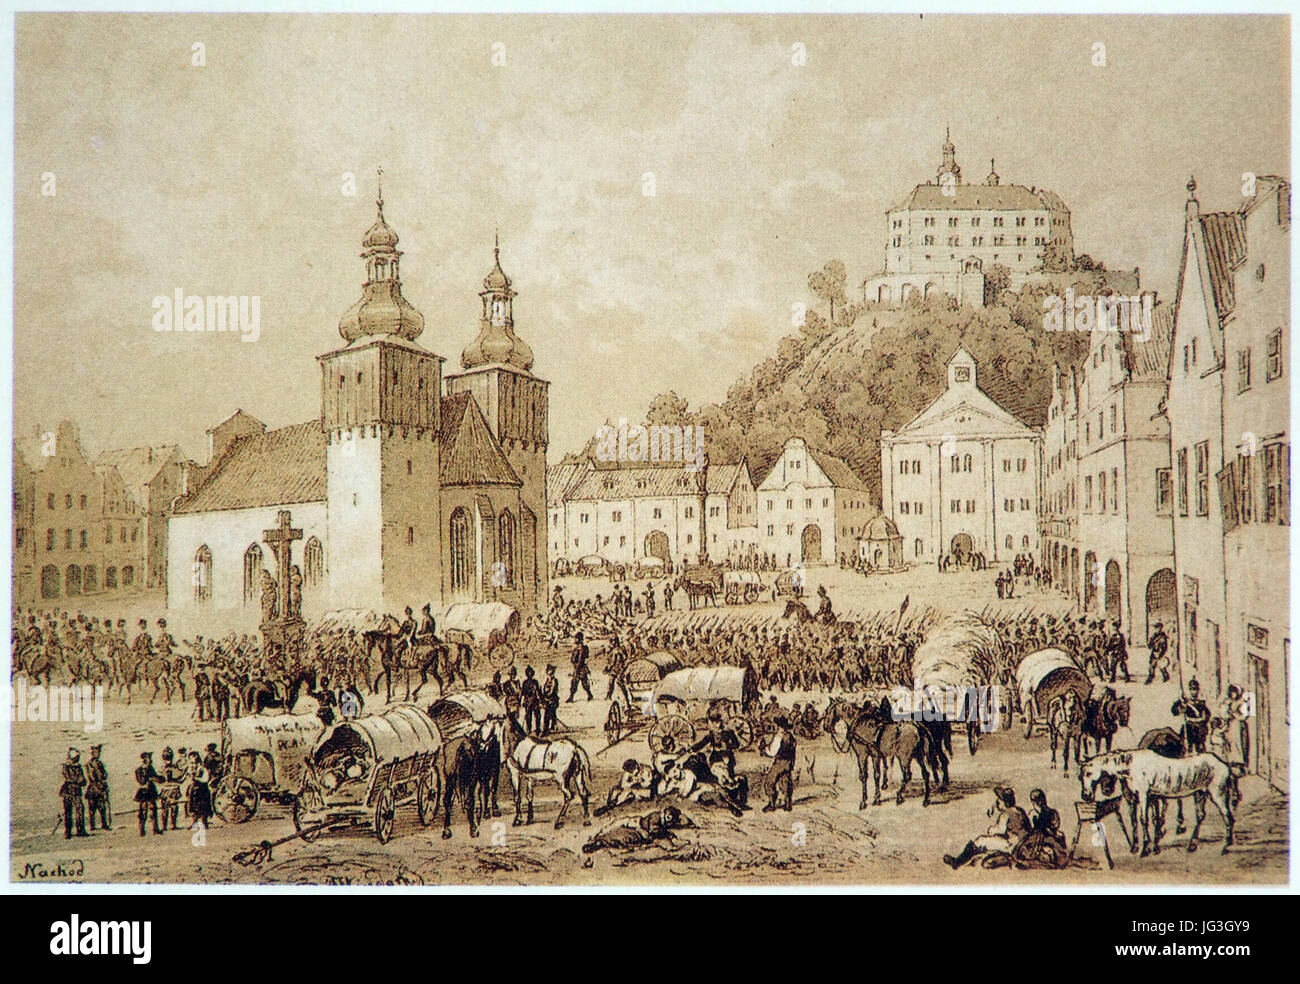 History of Náchod 13 - Náchod marketplace on 28th June 1866 Stock Photo